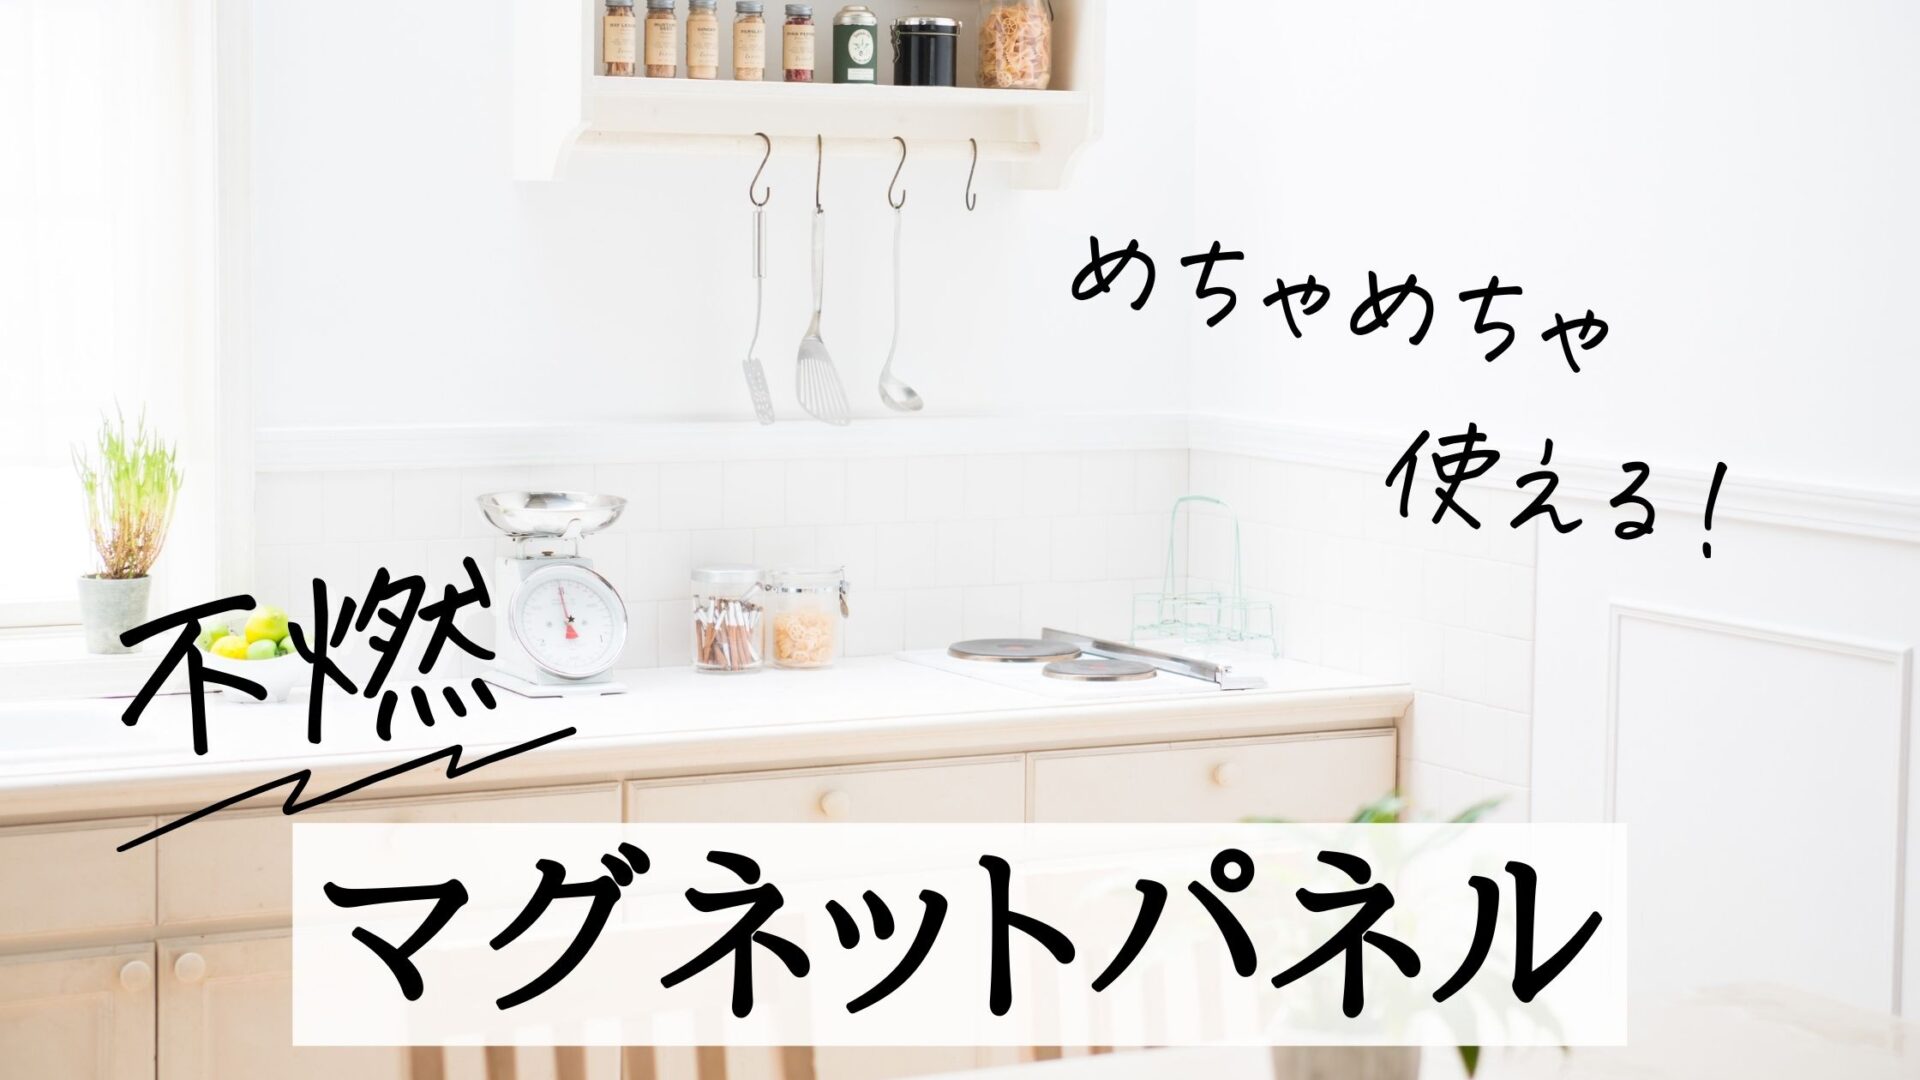 今人気のマグネット対応キッチンパネルおすすめ5選と活用術 | Sachi no 